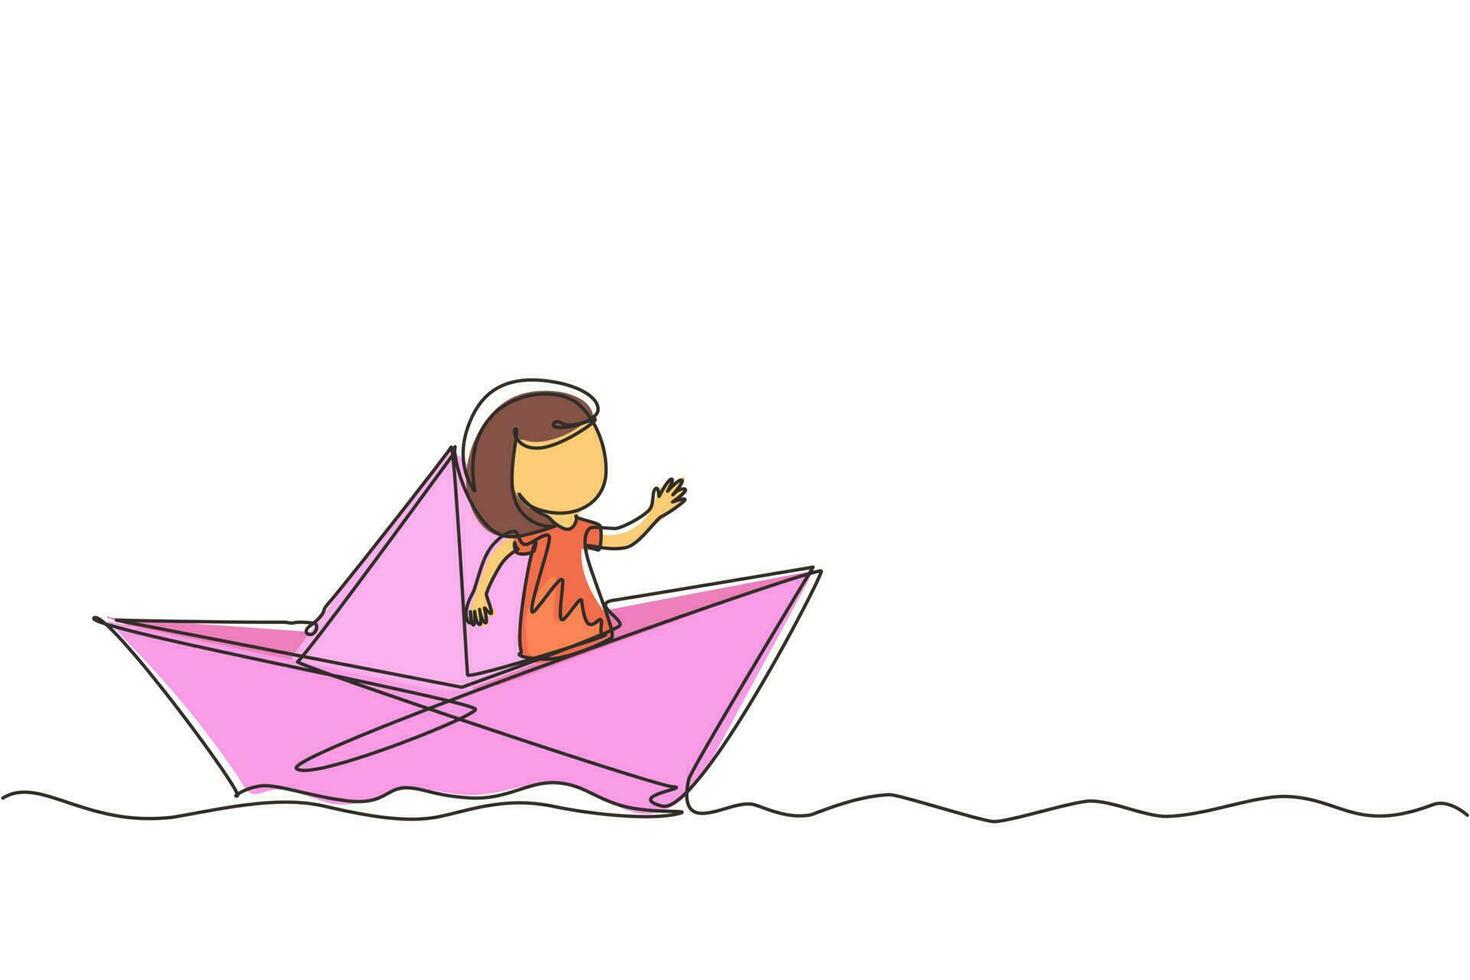 dibujo de una sola línea continua linda niña sonriente navegando en un barco de papel. niño feliz y sonriente divirtiéndose y jugando al marinero en un mundo imaginario. ilustración de vector de diseño gráfico de dibujo de una línea